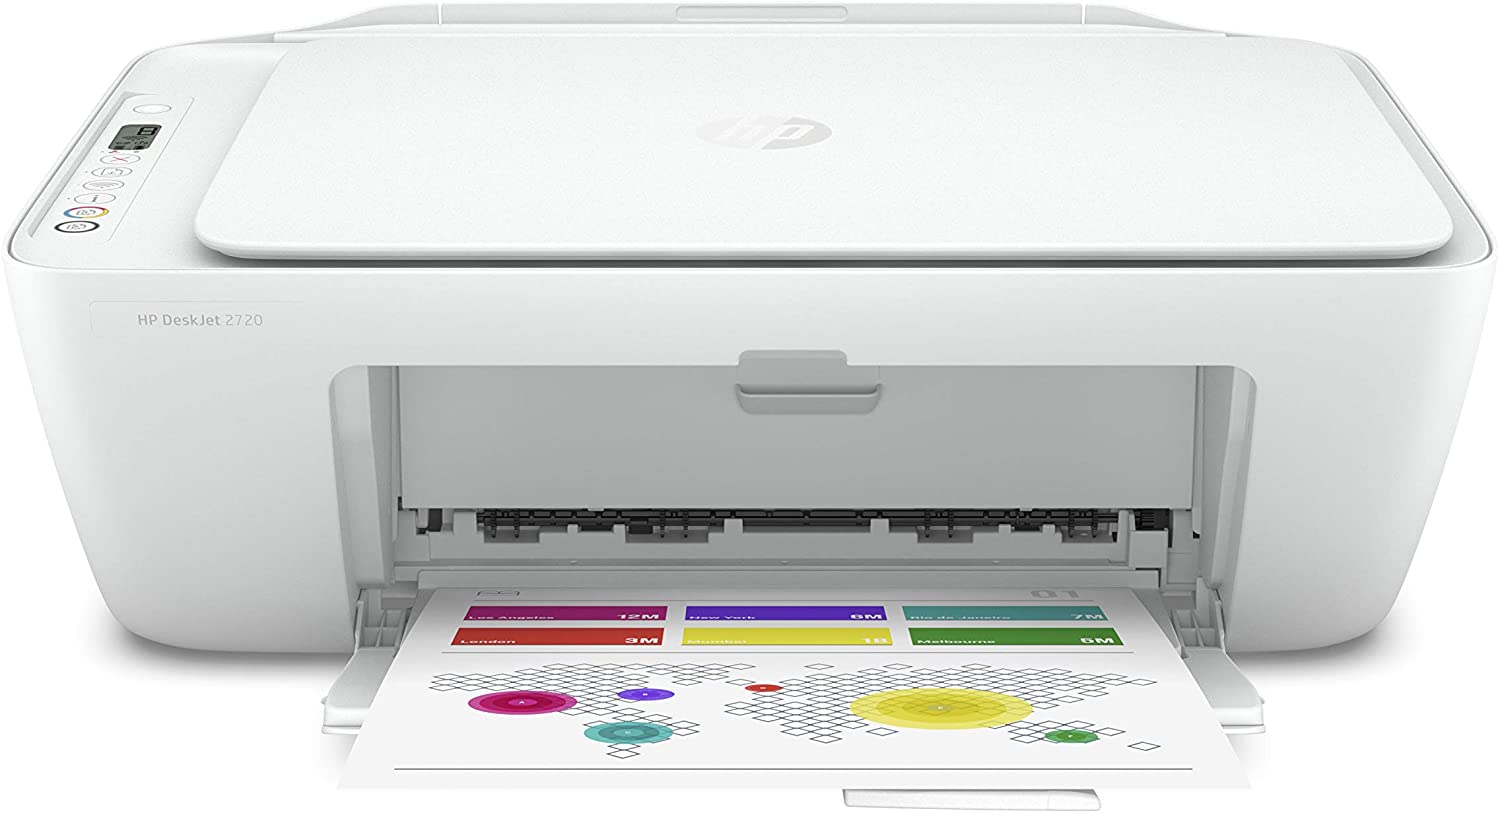 HP Envy Vs DeskJet - ¿Qué tipo de impresora de HP es la mejor?